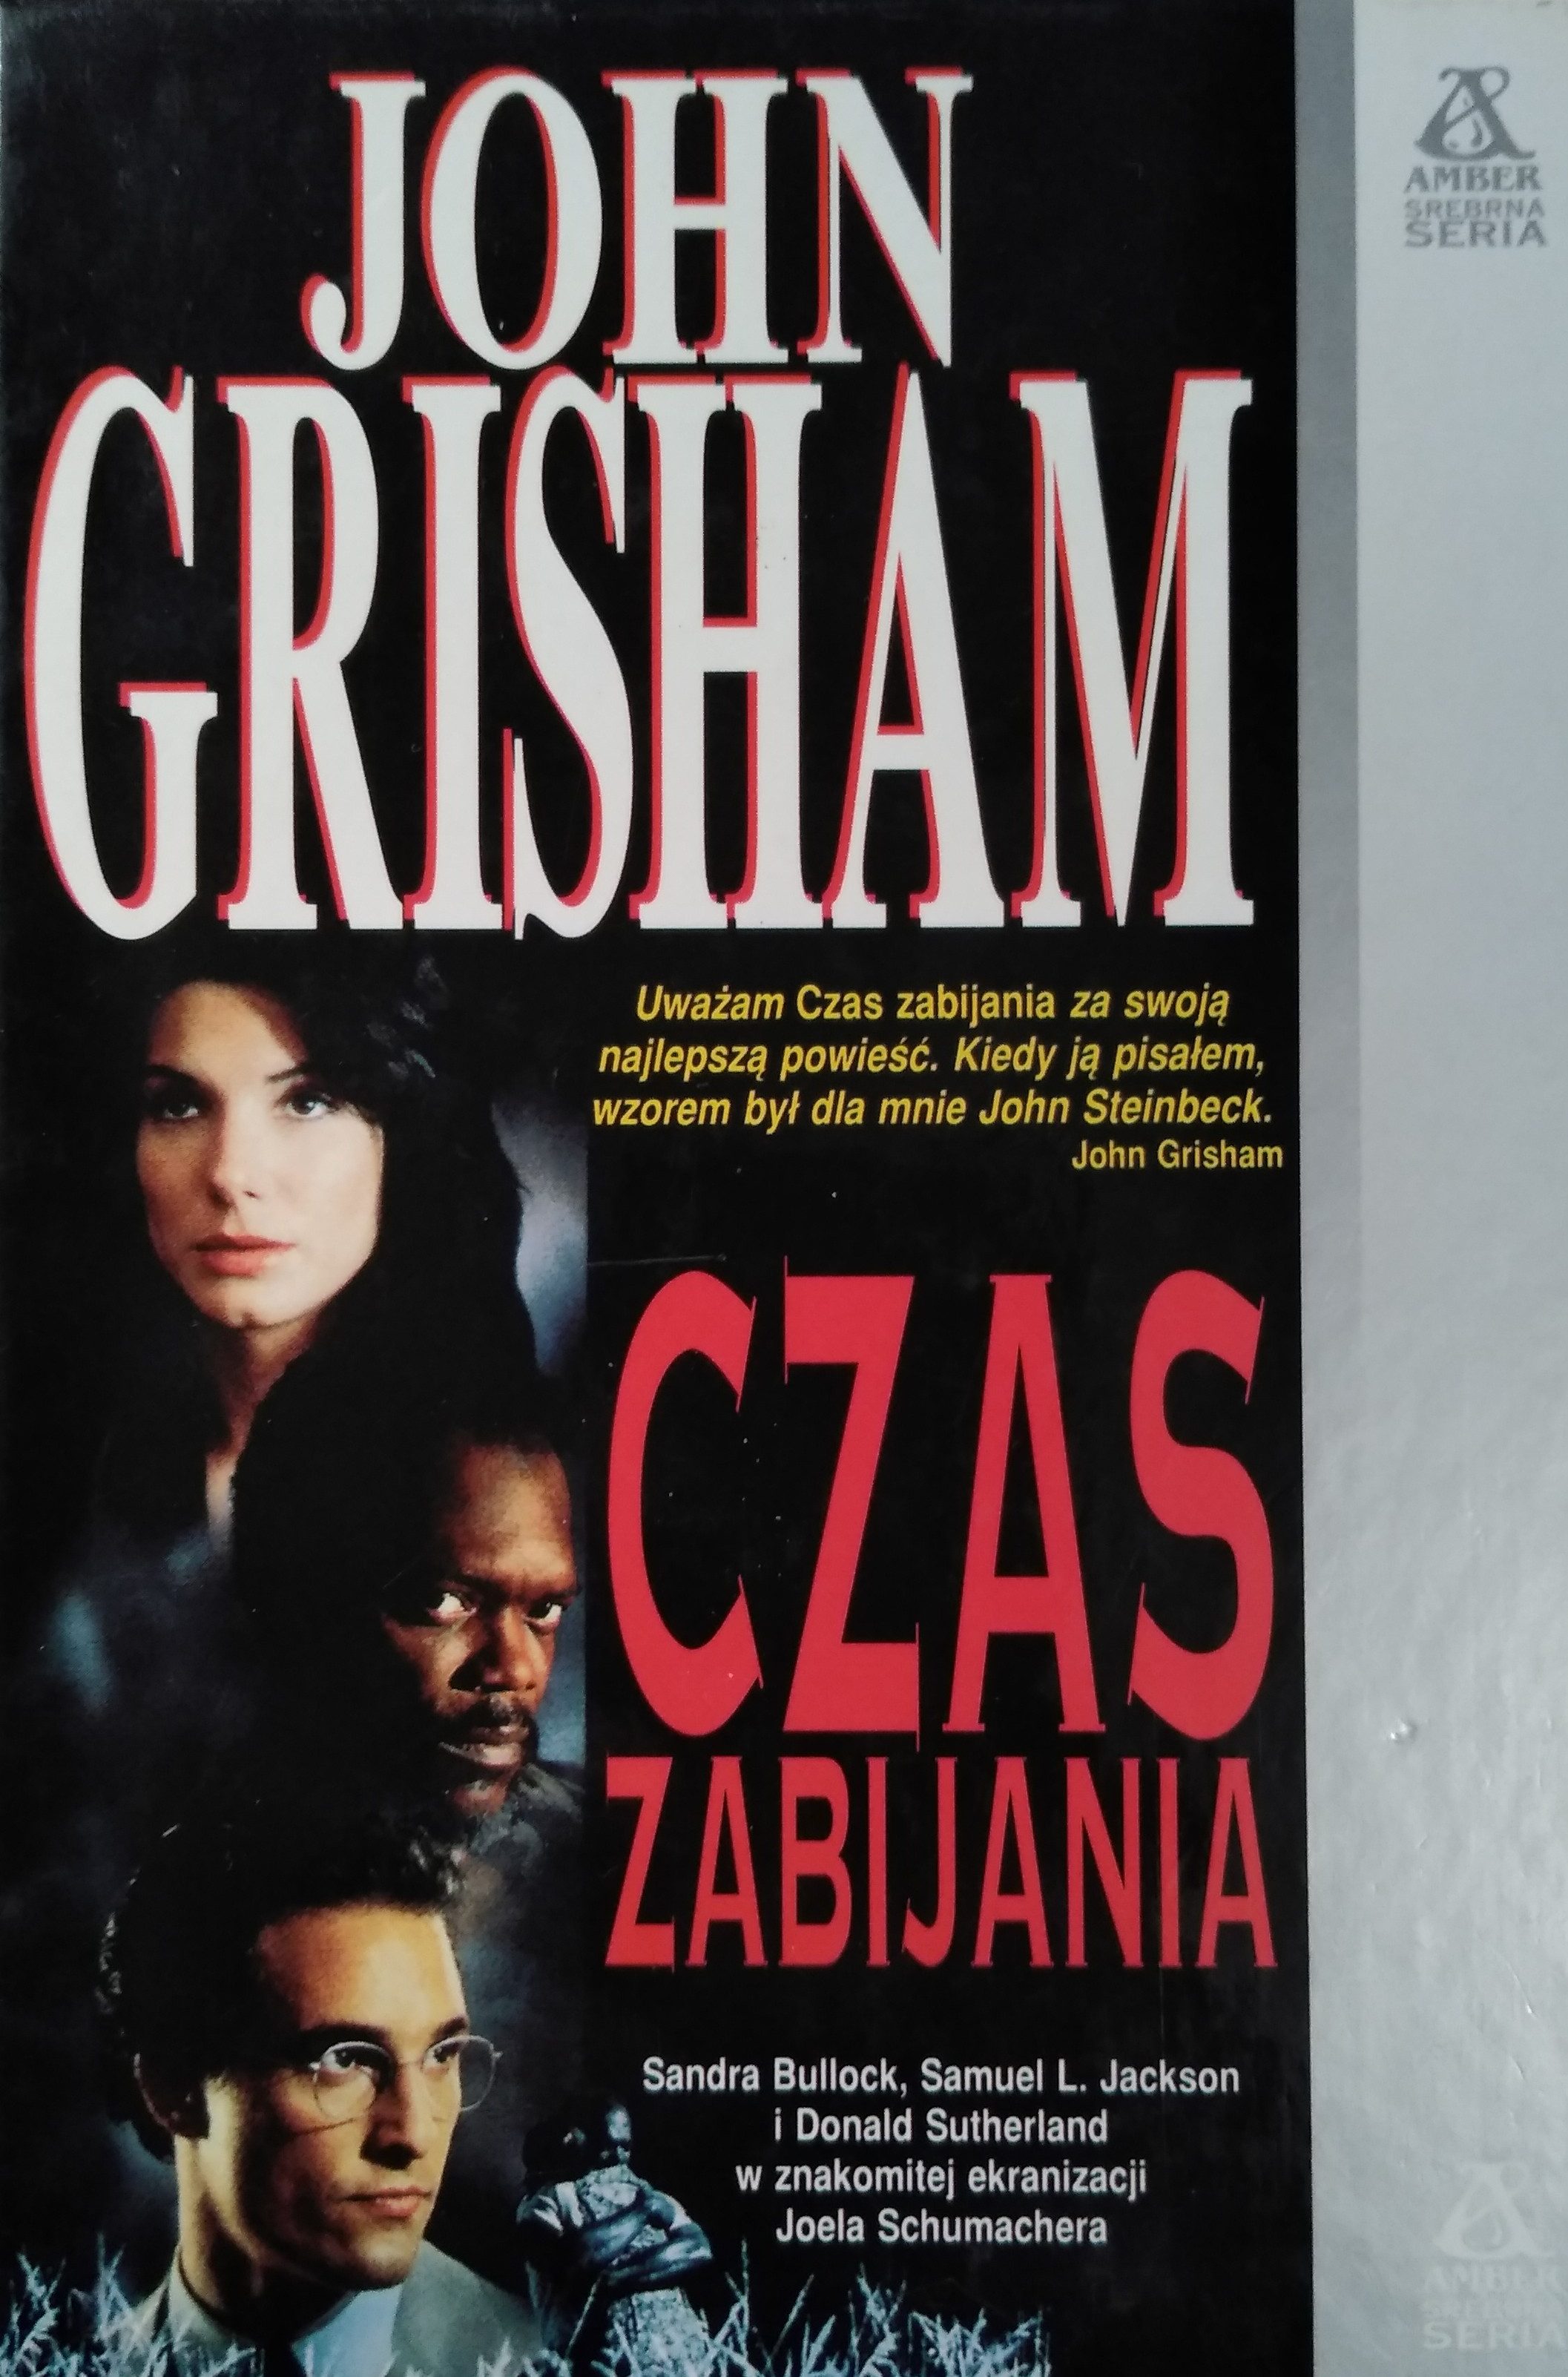 You are currently viewing Recenzja książki: „Czas zabijania” Johna Grishama